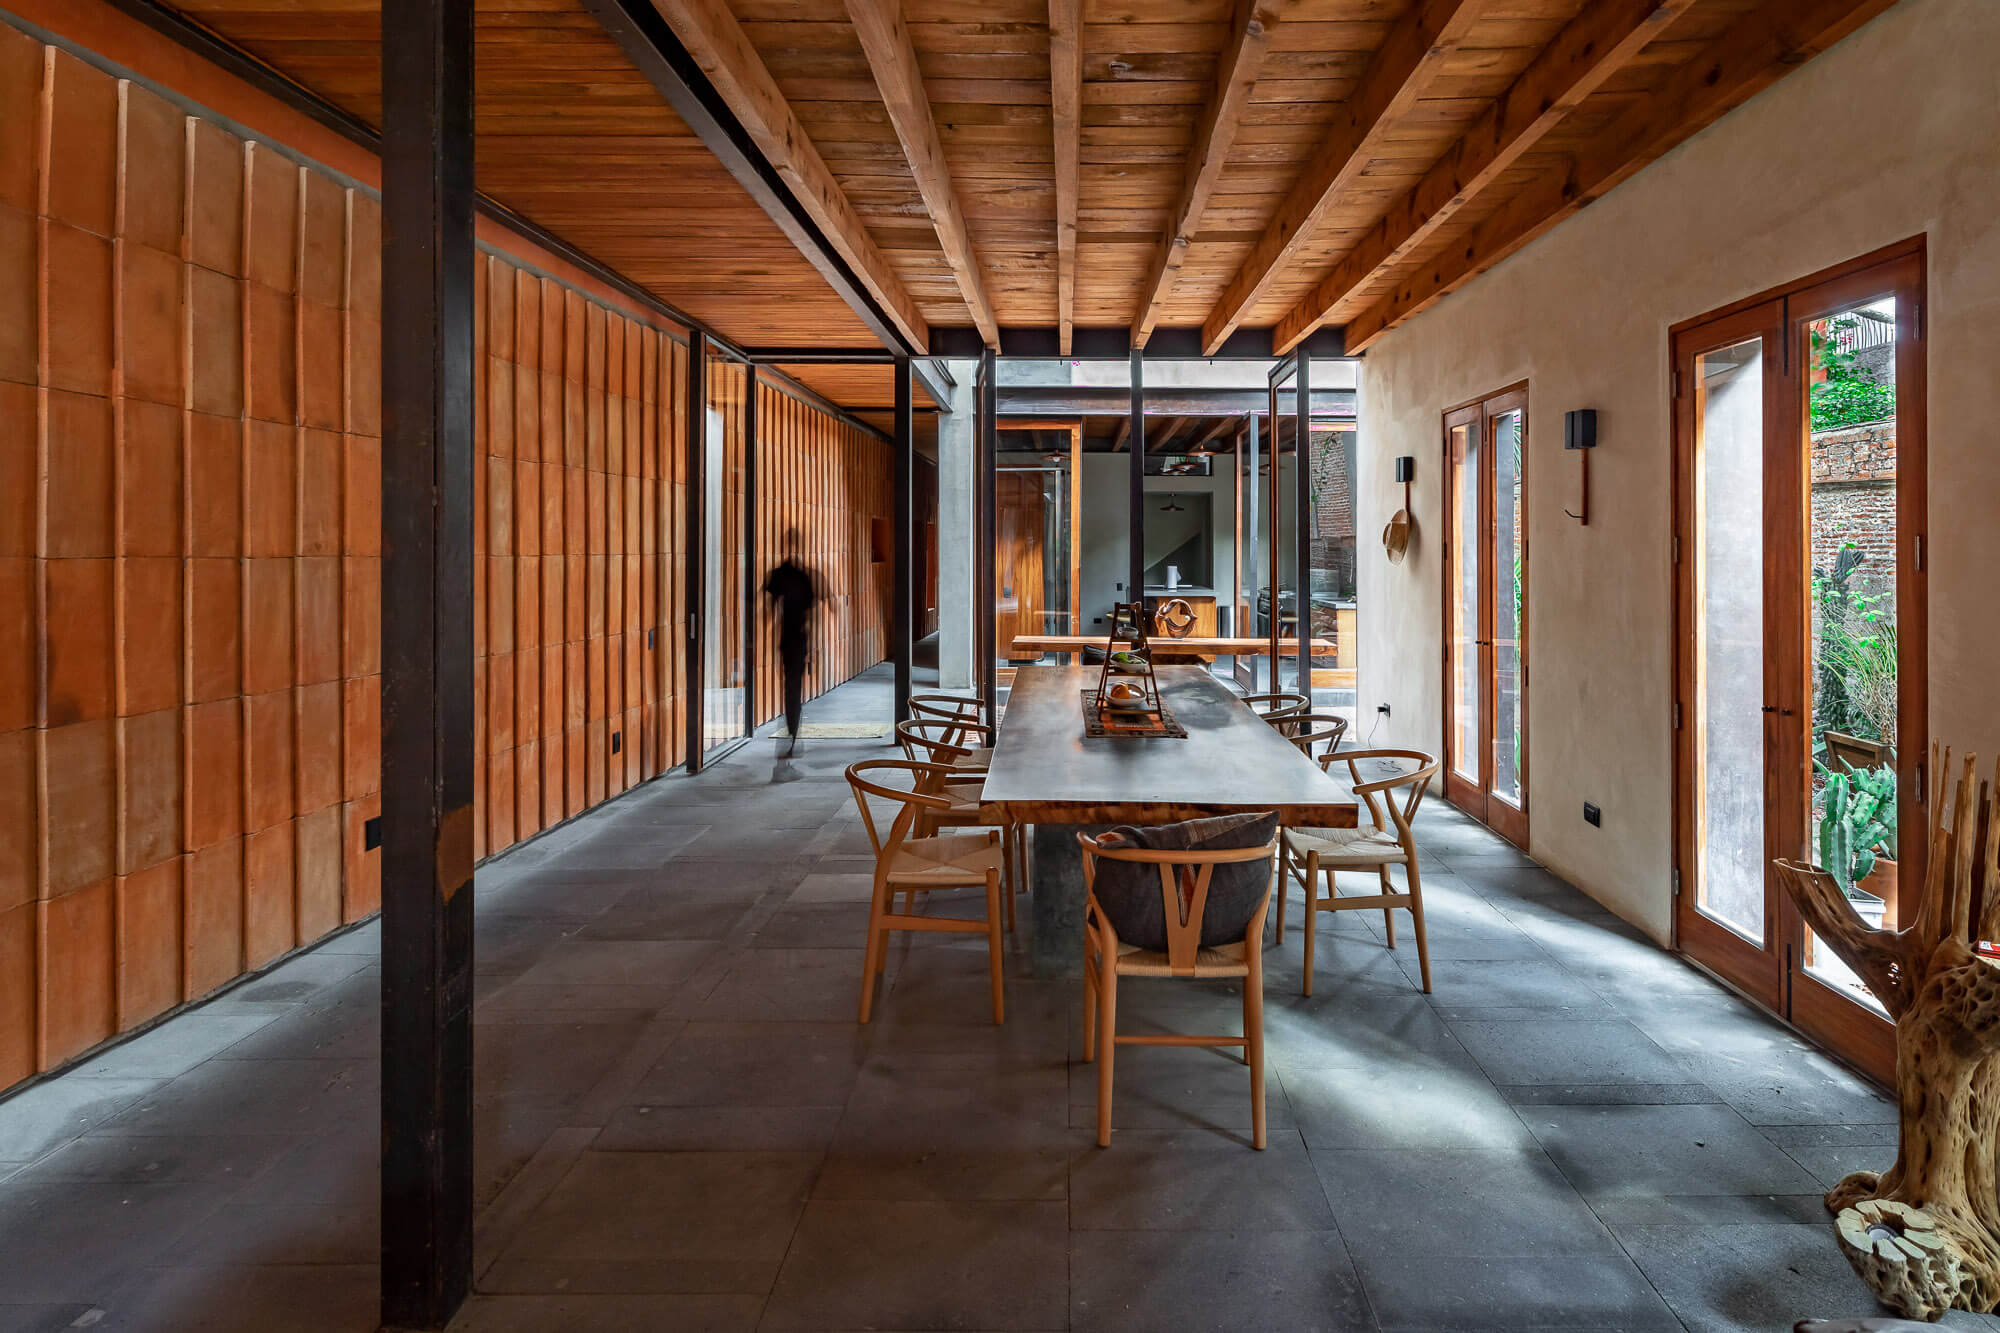 Persona caminando dentro de comedor con muros de ladrillo, techo y muebles de madera con acabado rústico moderno